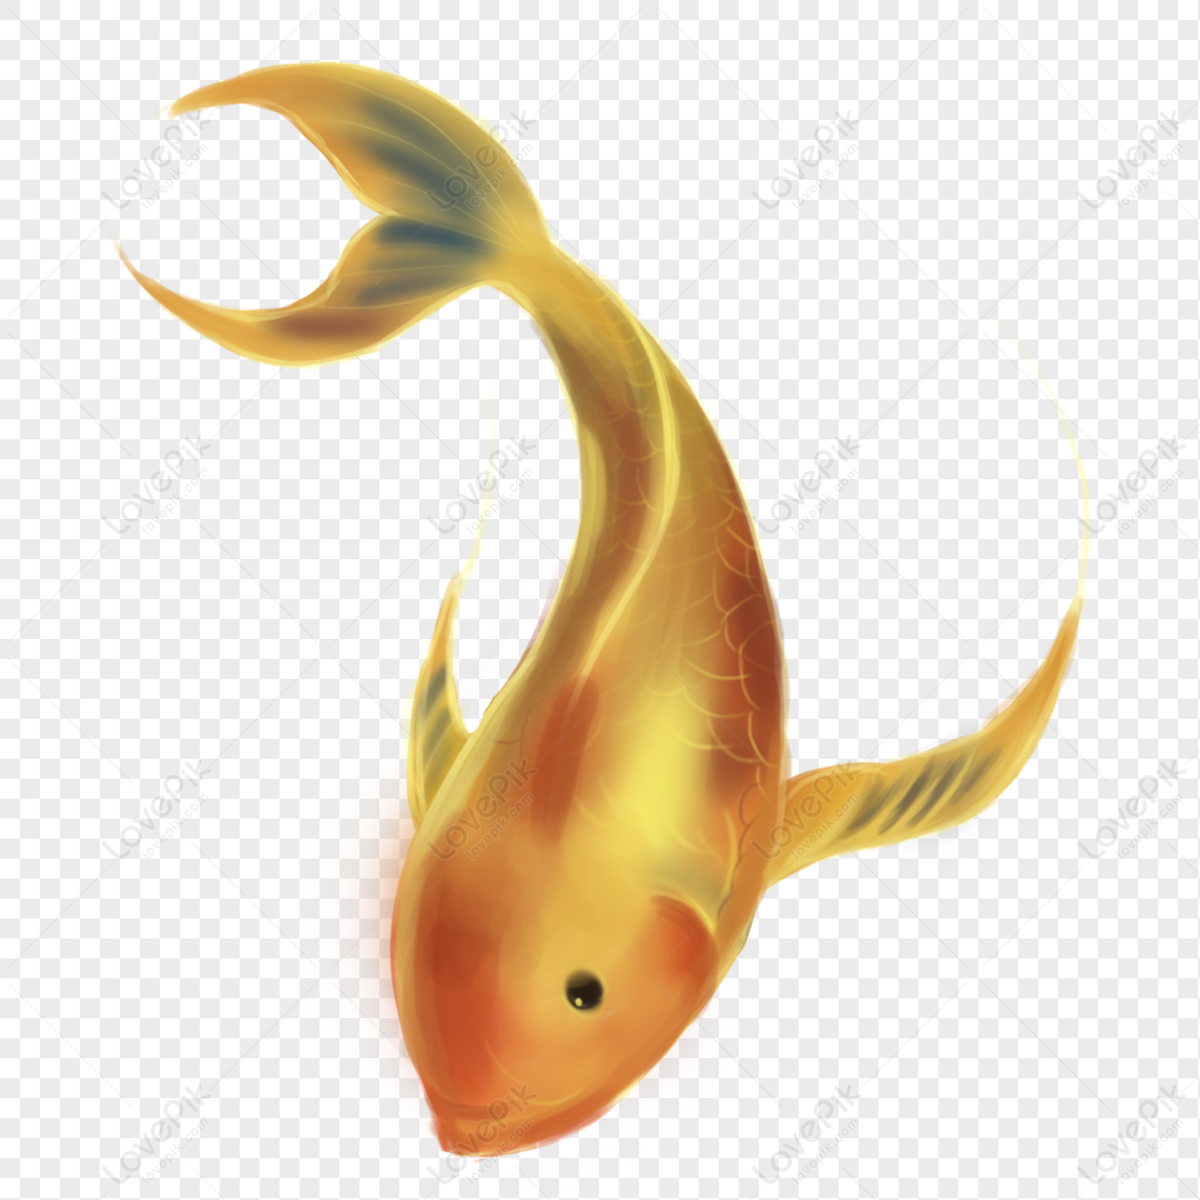 Hình ảnh Một Con Cá Vàng PNG Miễn Phí Tải Về - Lovepik